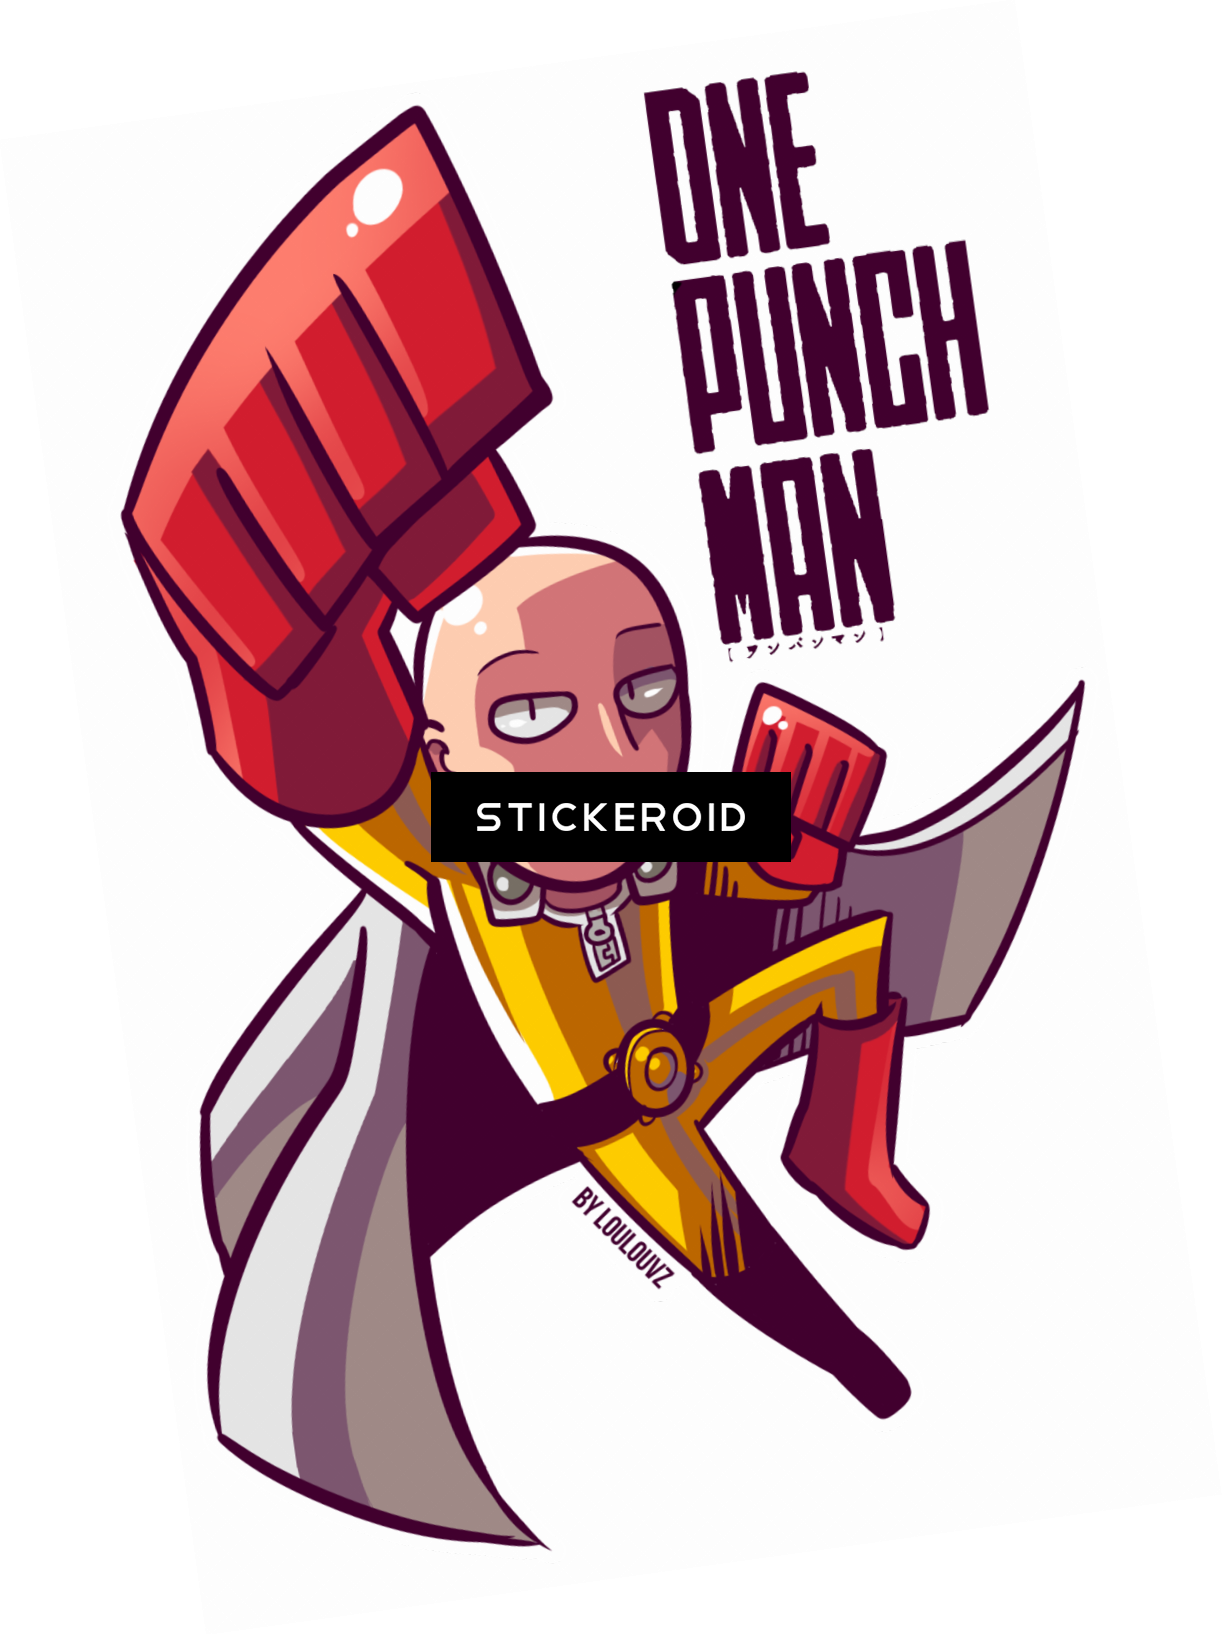 One Punch Man Sticker Design